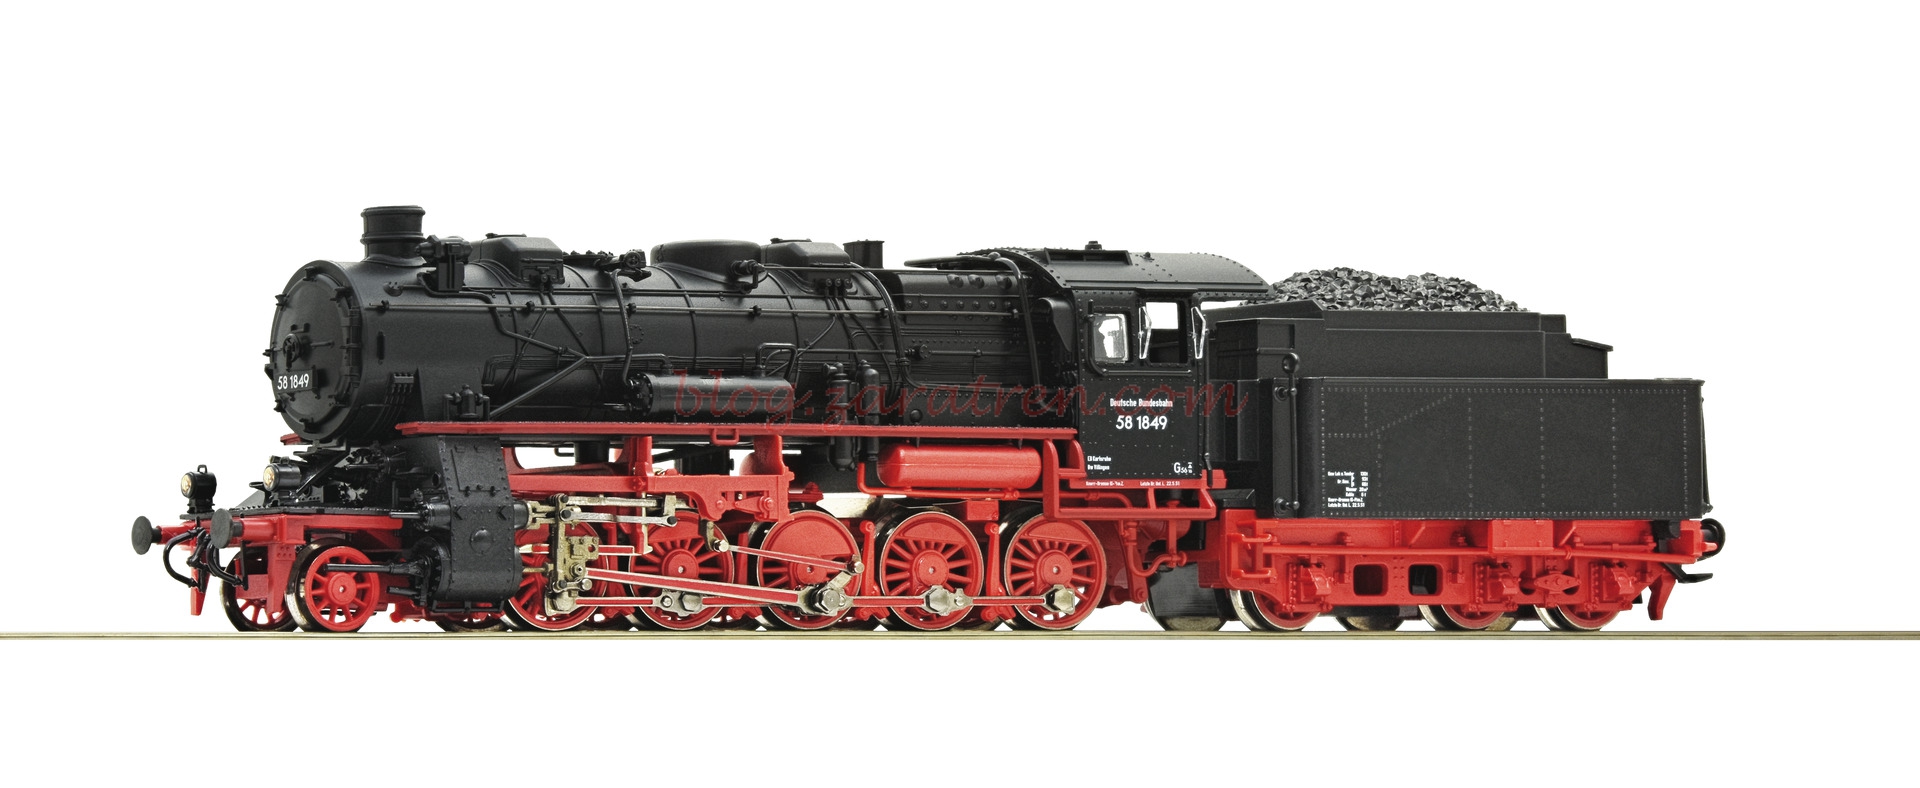 Roco – Locomotora de Vapor Clase 58 1849, DB, Epoca III, Escala H0. Ref: 71922.